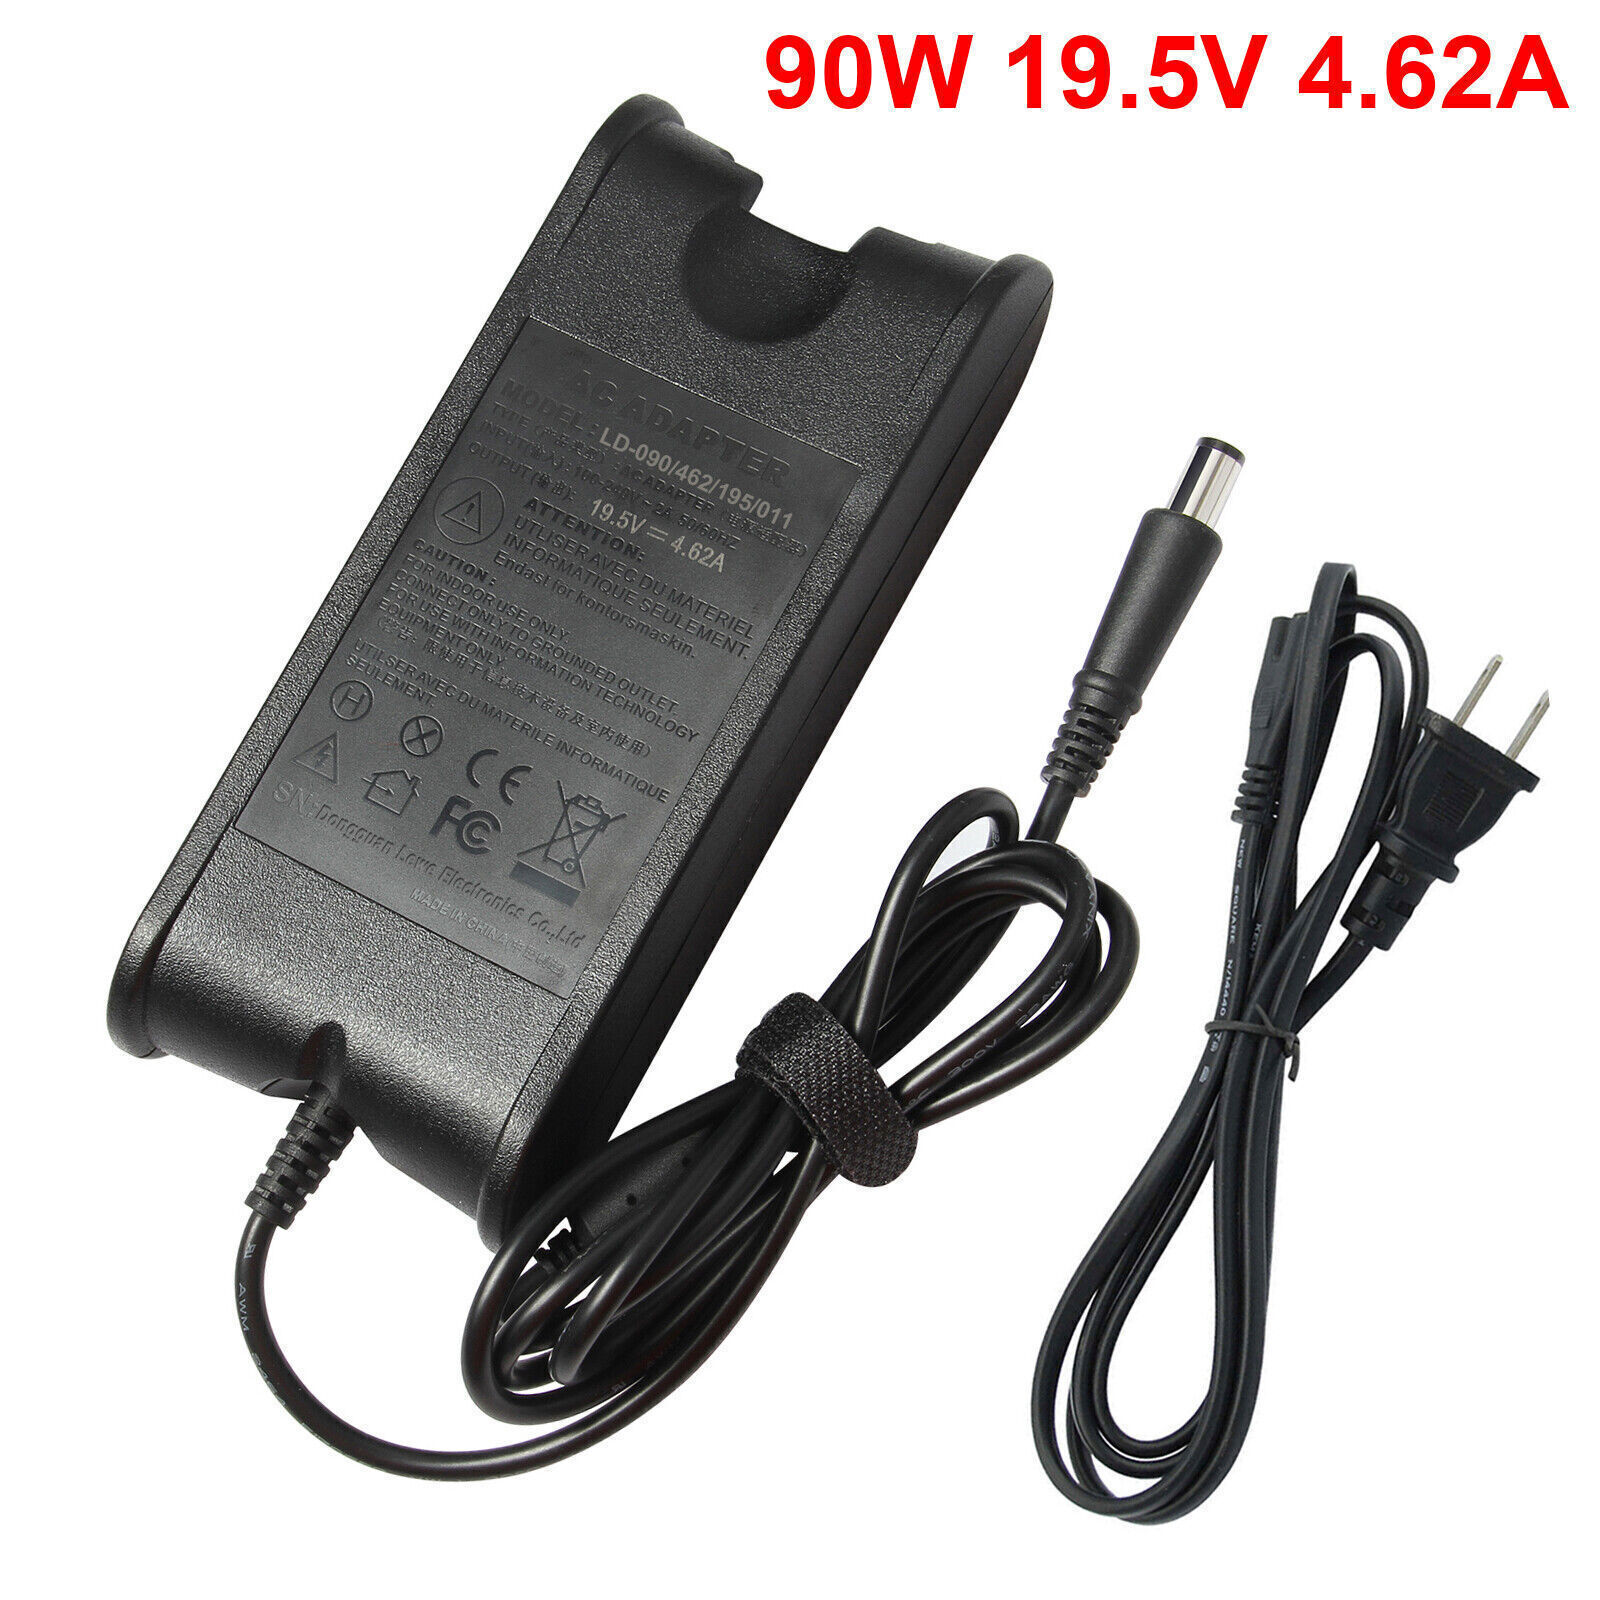 LOT 90W AC Adapter Charger For Dell Latitude E6400 E6410 E6420 E6430 E6440 E7440